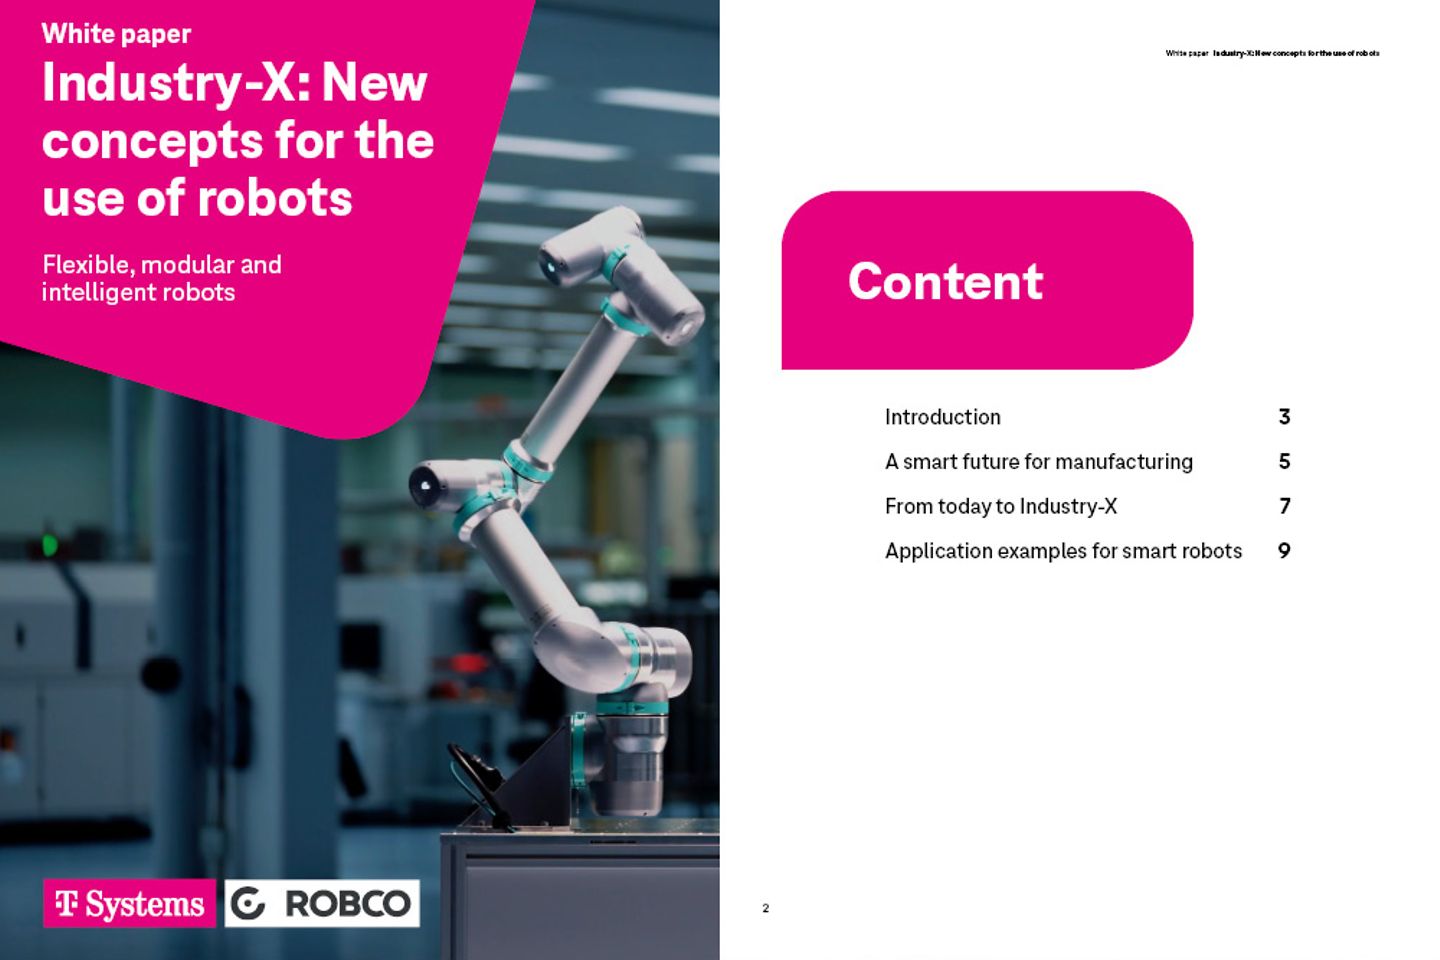 Vista previa: Nuevos conceptos para el uso de robots